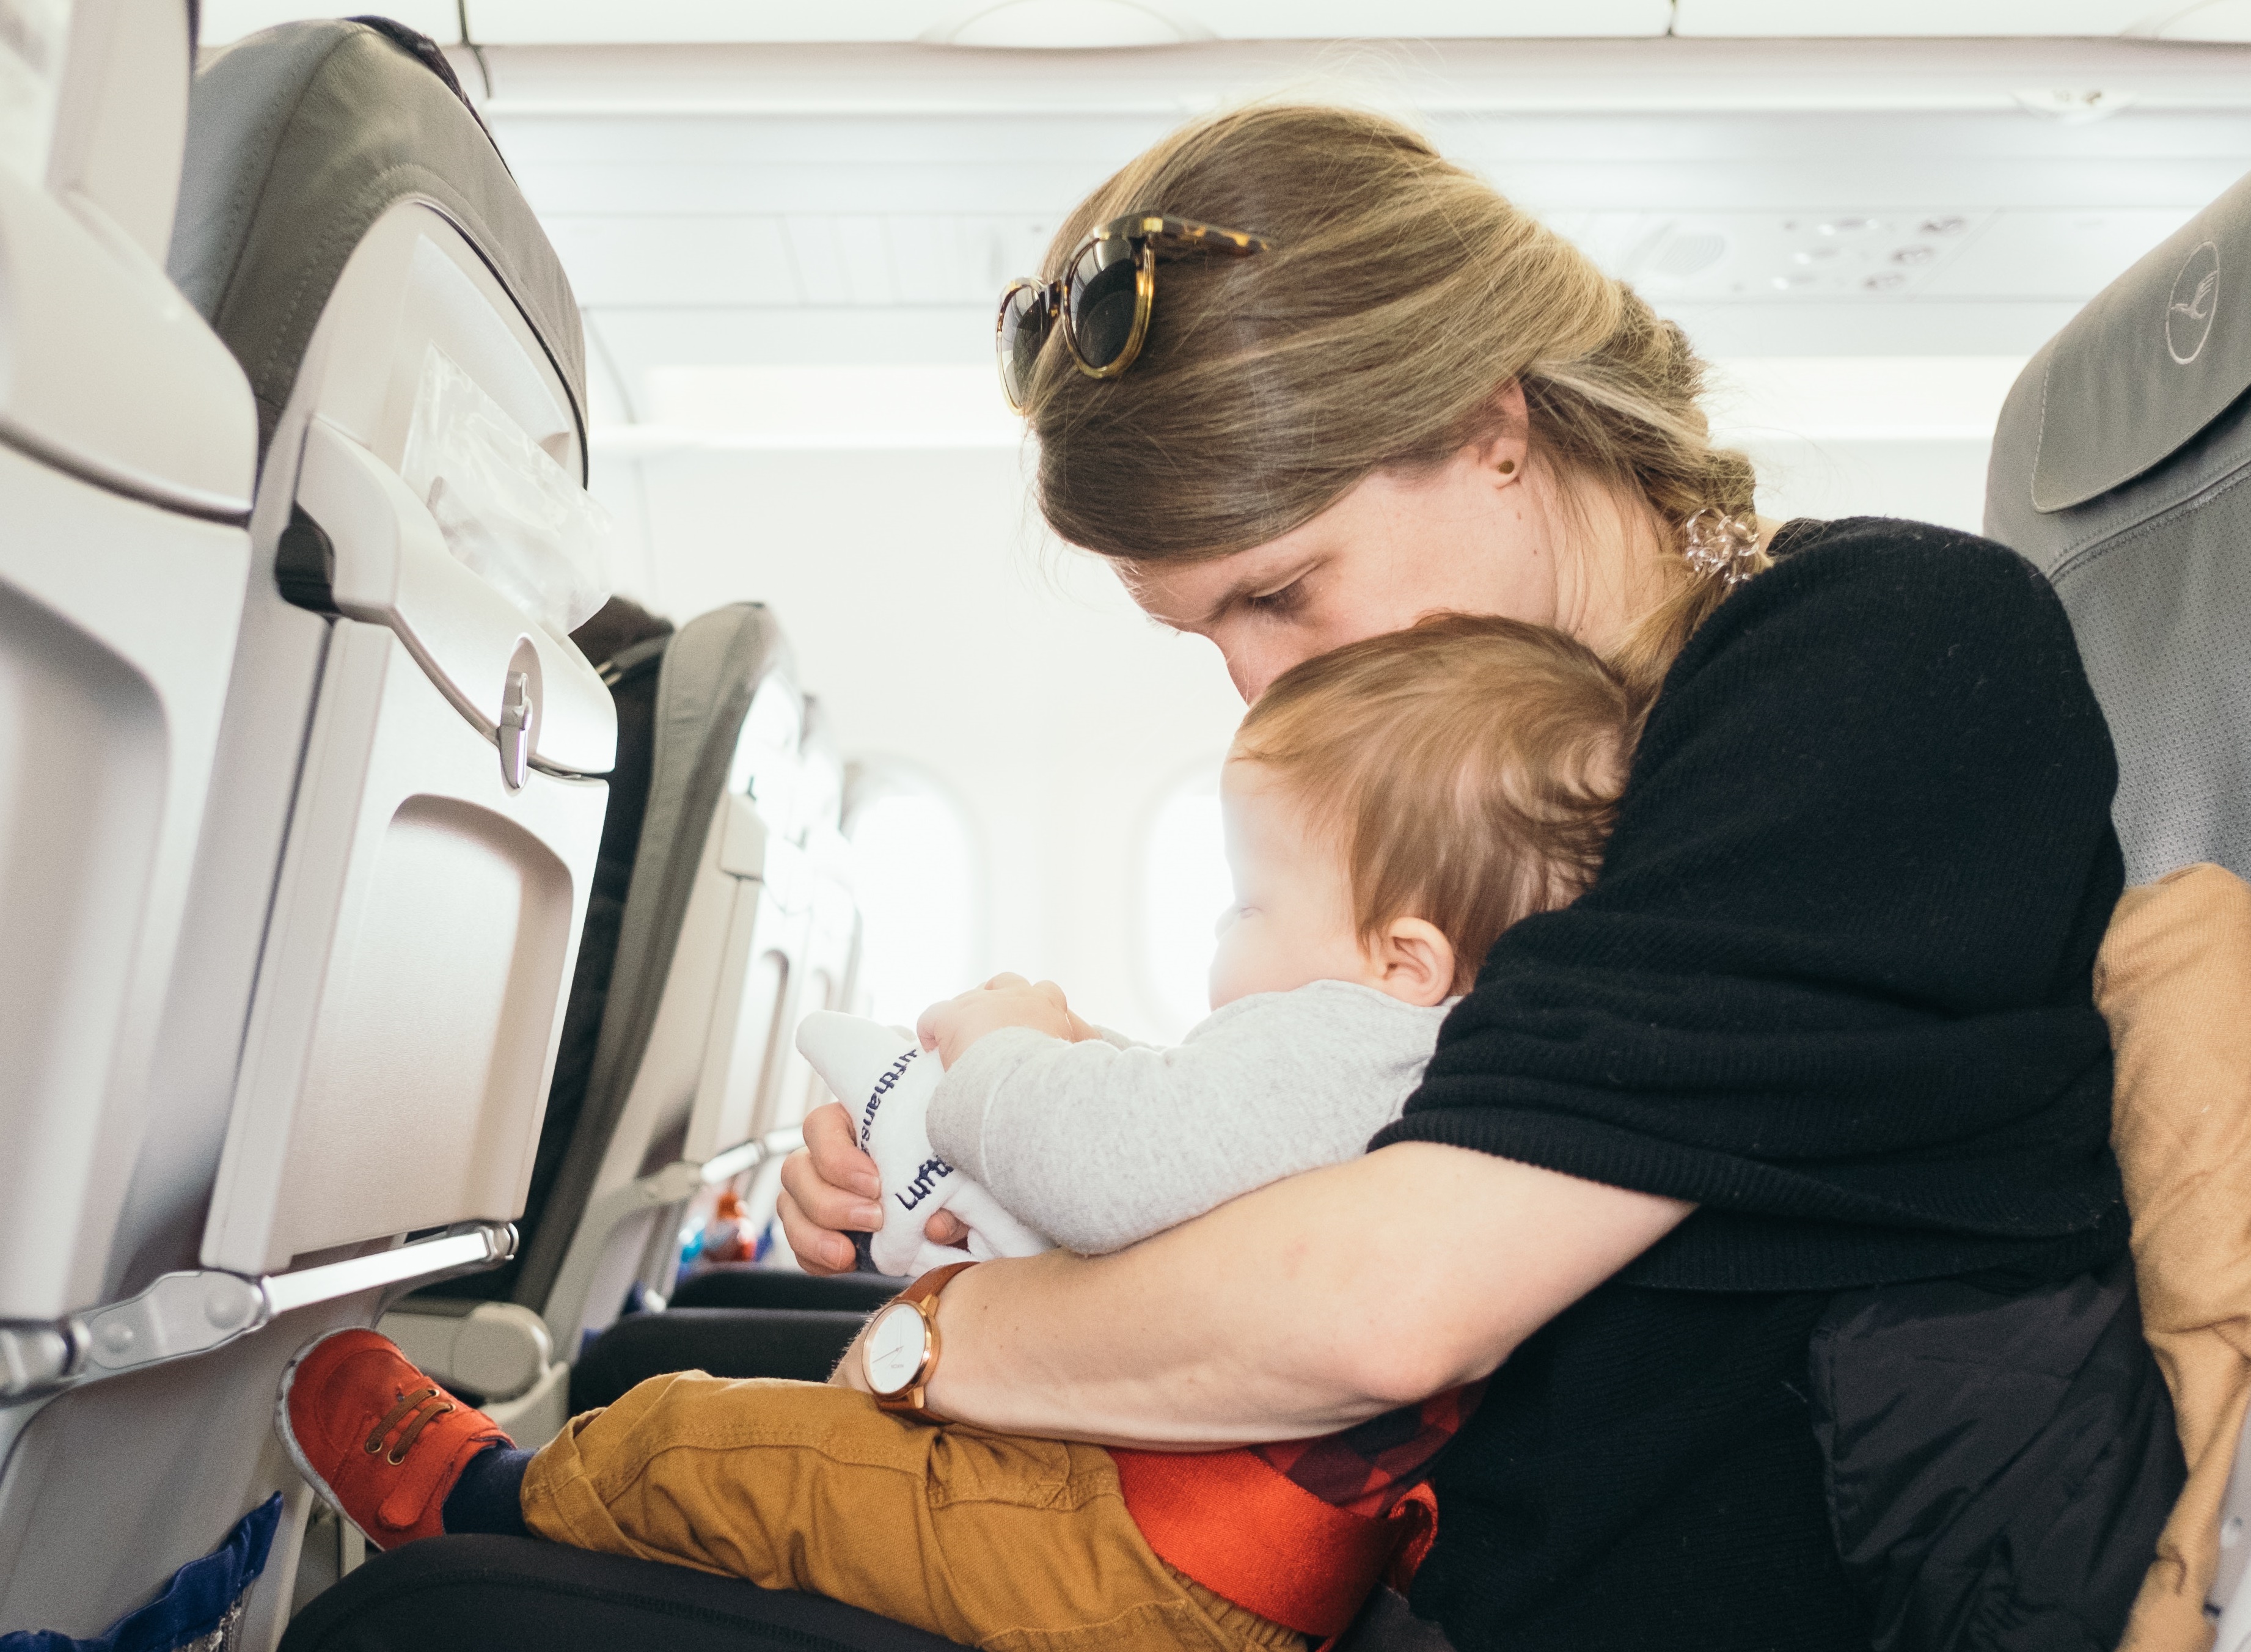 Дети в самолете без родителей. Пассажиры с детьми в самолете. Самолет для детей. Путешествие на самолете для детей. Места для детей в самолете.